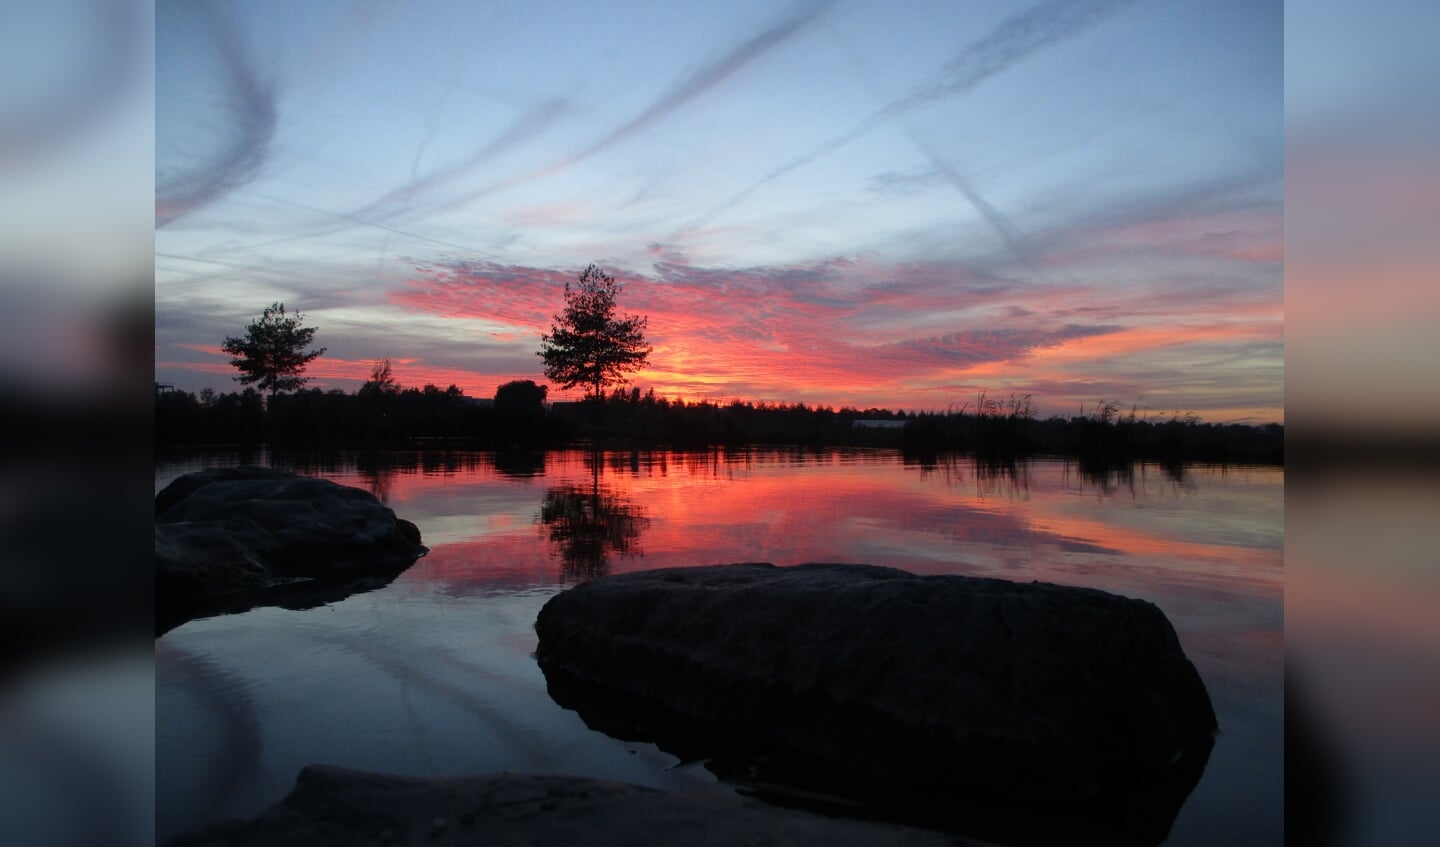 Prachtige zonsondergang weerspiegeld in het water in het Limespark. Beeld: Machiel Haasjes